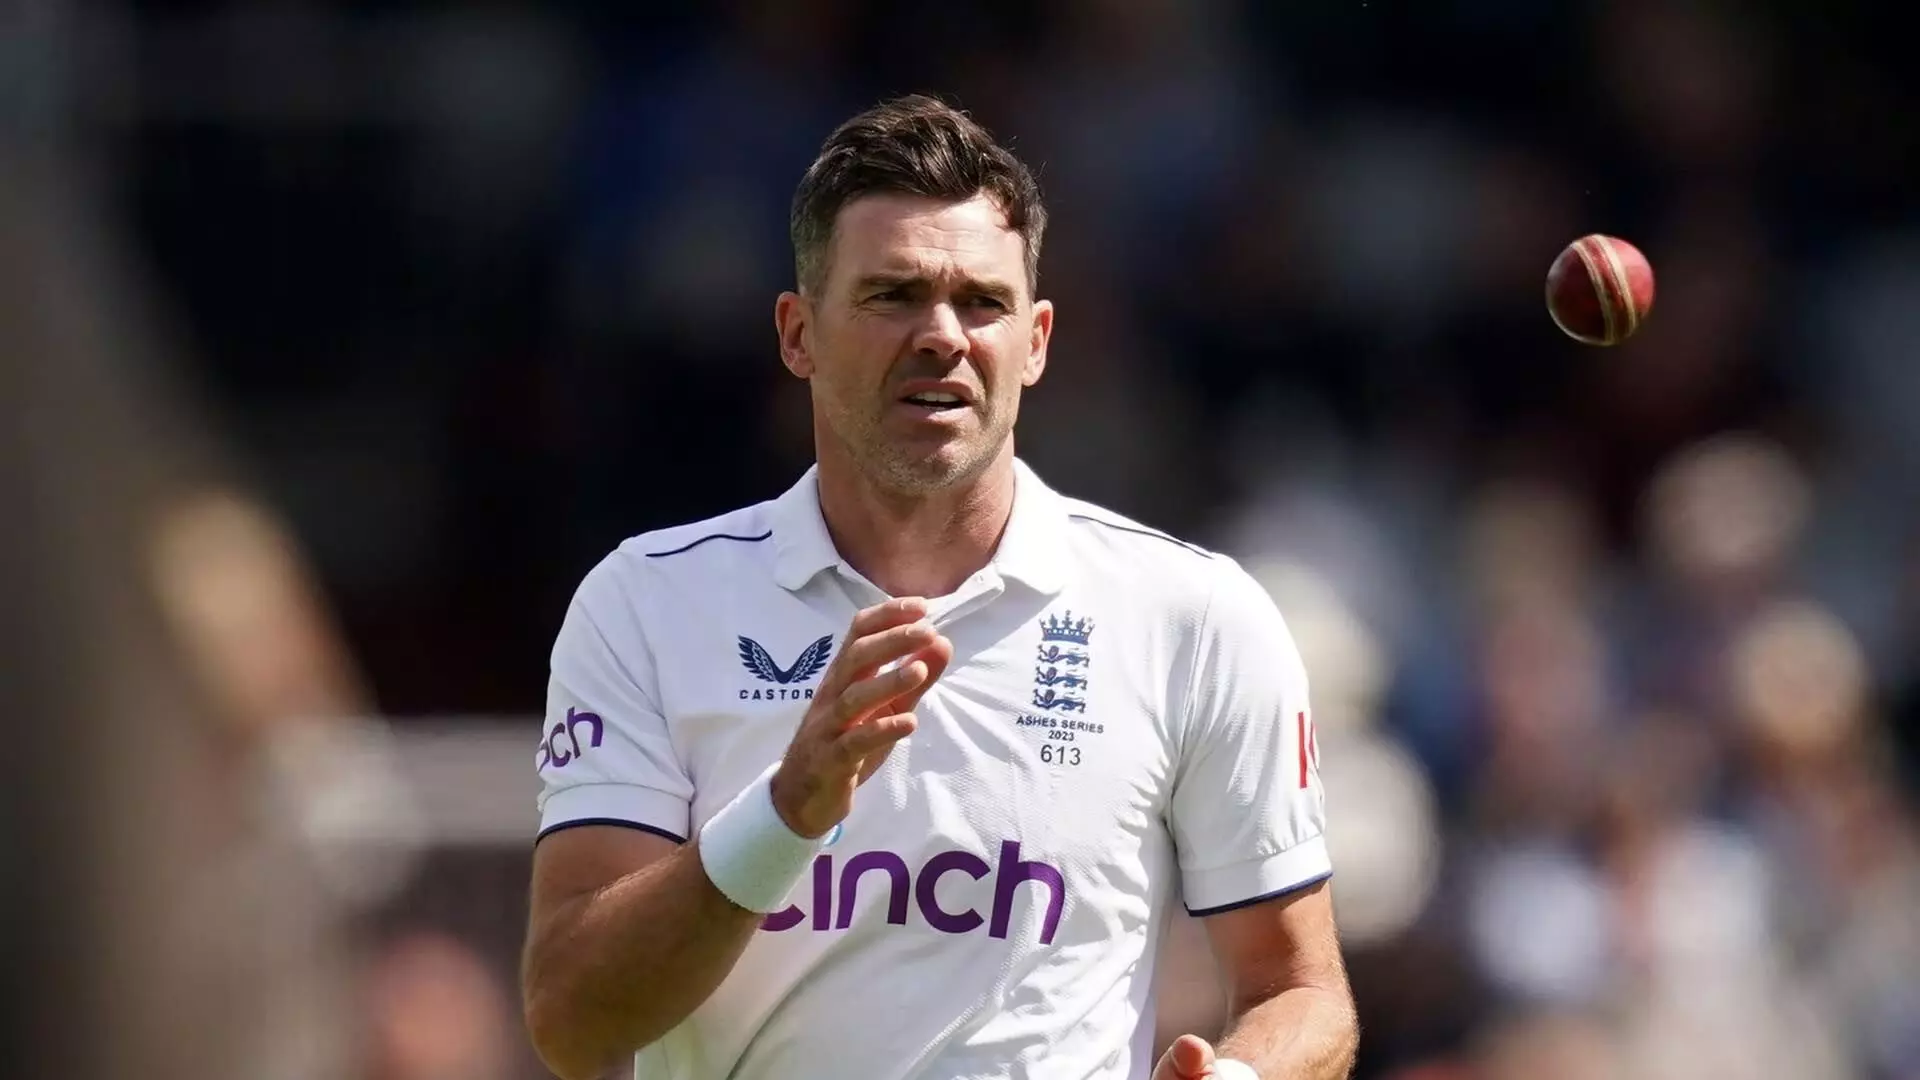 जेम्स एंडरसन लॉर्ड्स में वेस्टइंडीज के खिलाफ पहले टेस्ट के बाद अंतरराष्ट्रीय क्रिकेट से संन्यास लेंगे